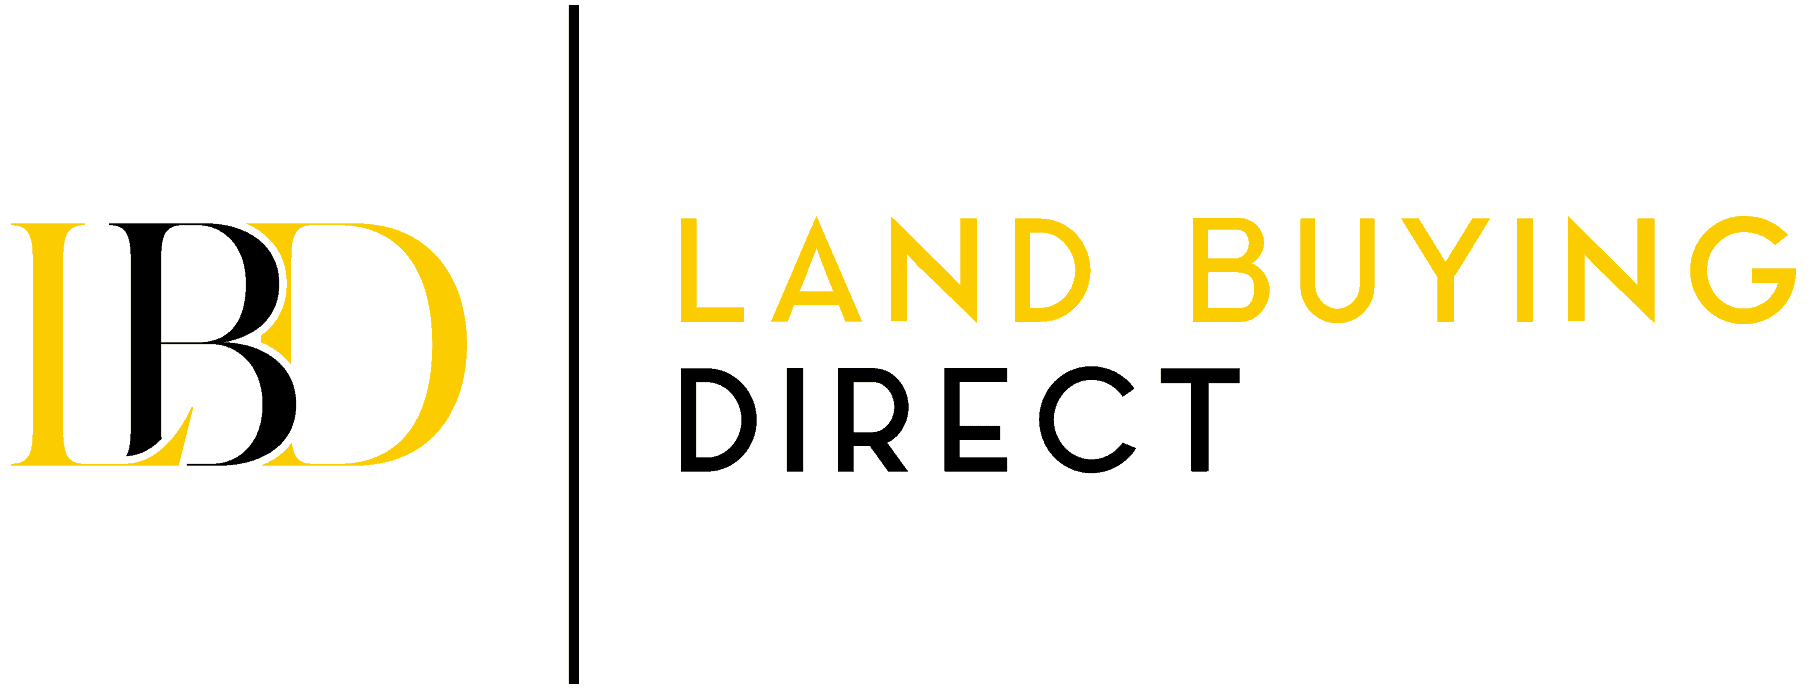 Landbuyingdirect.com